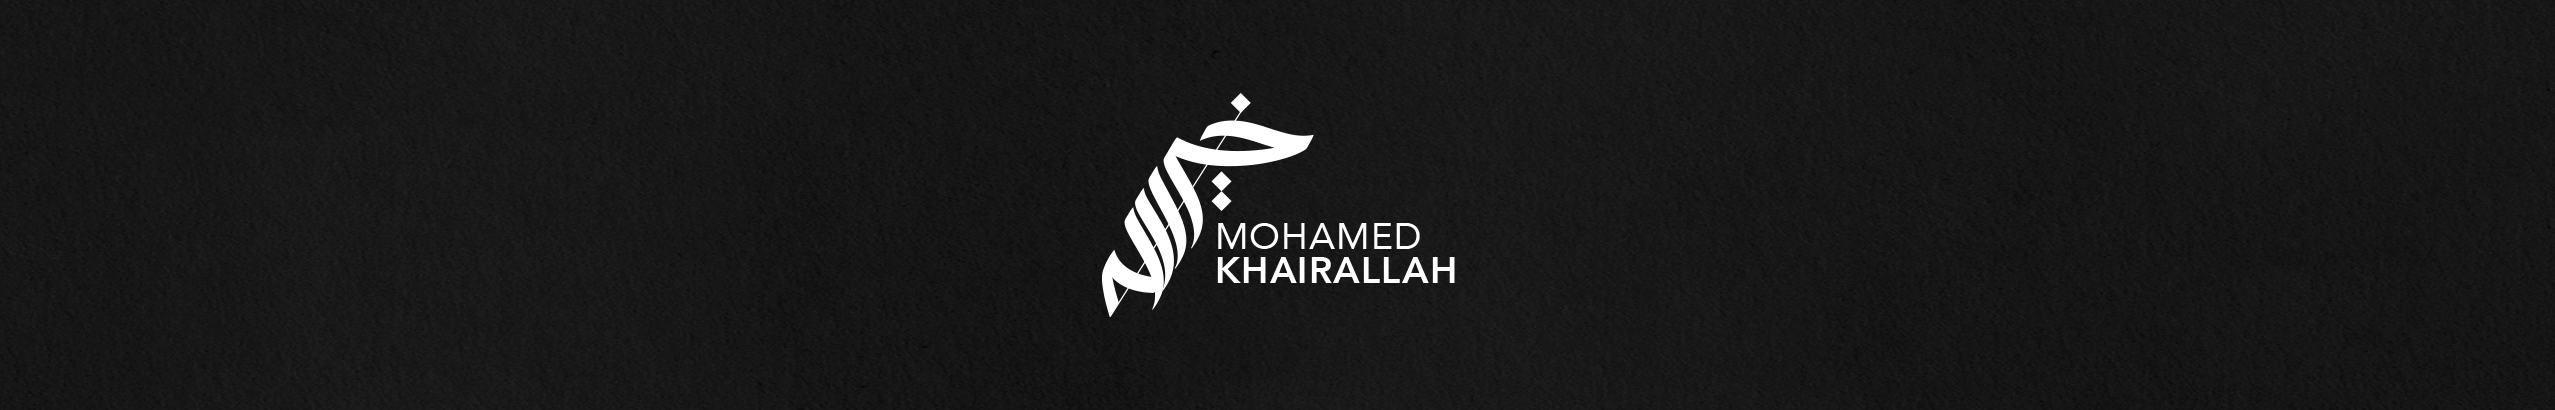 Mohamed Khairallah 的個人檔案橫幅